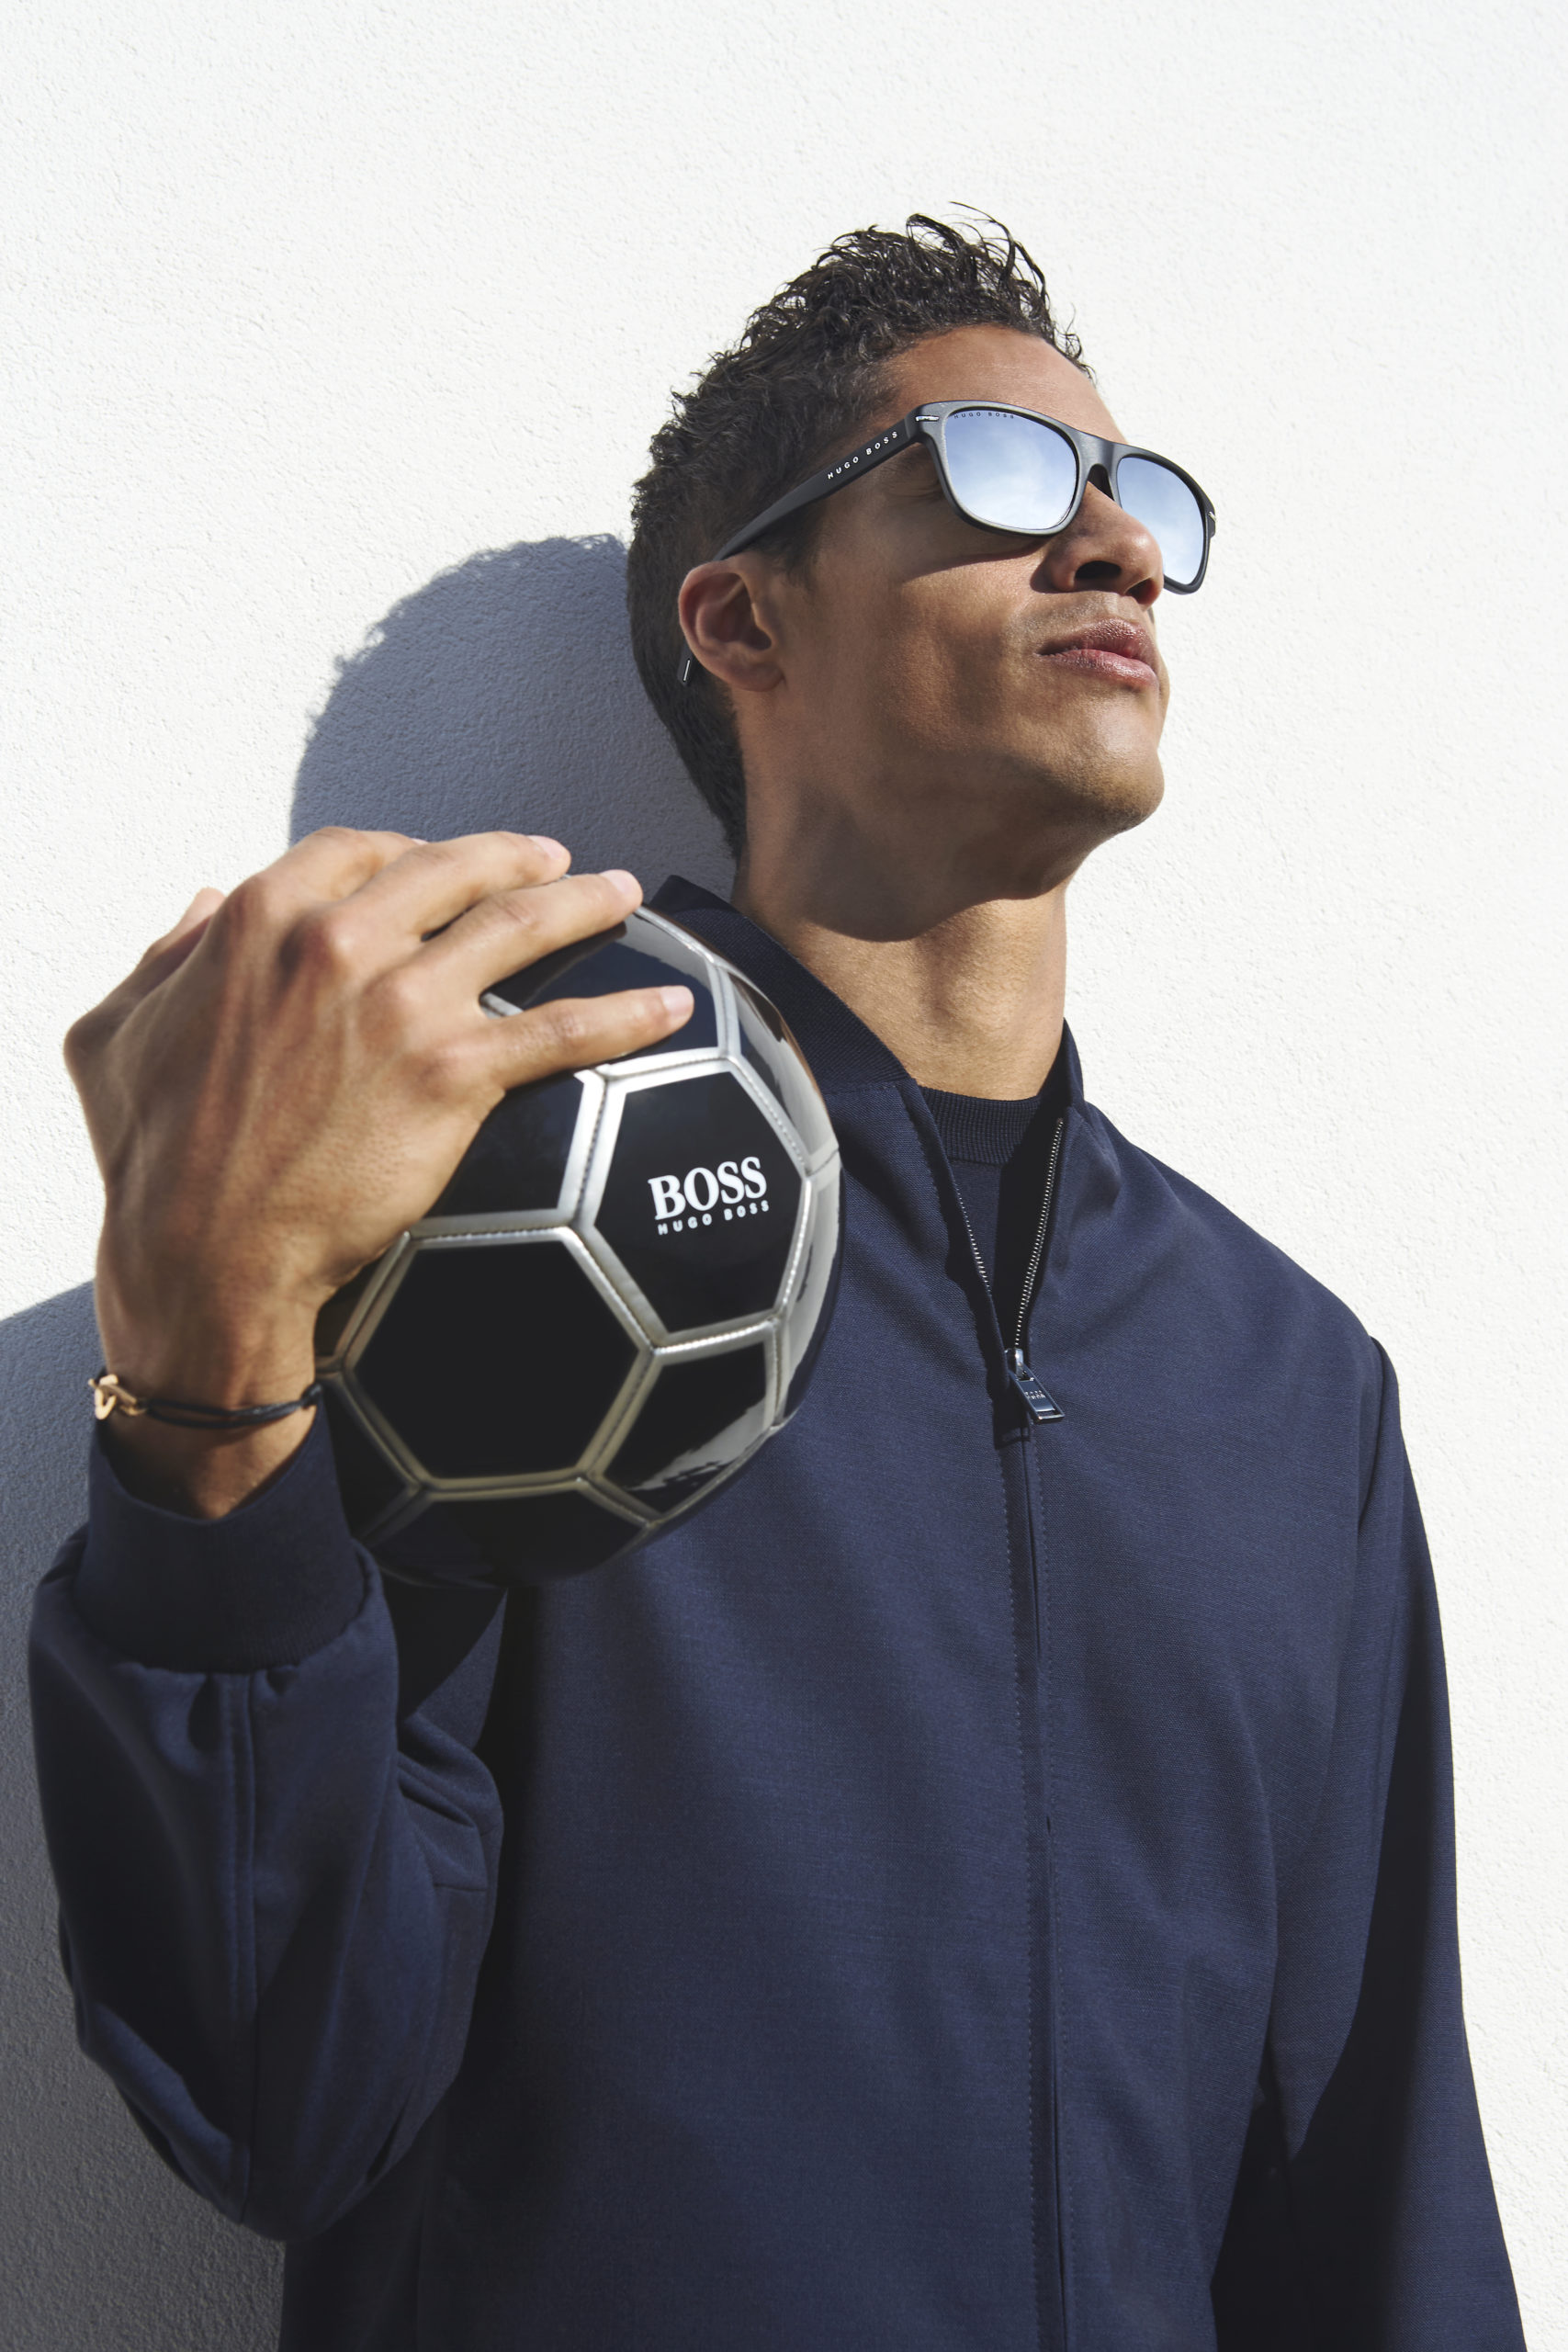 Hugo Boss prépare l’Euro 2020 avec sa nouvelle collection de lunettes